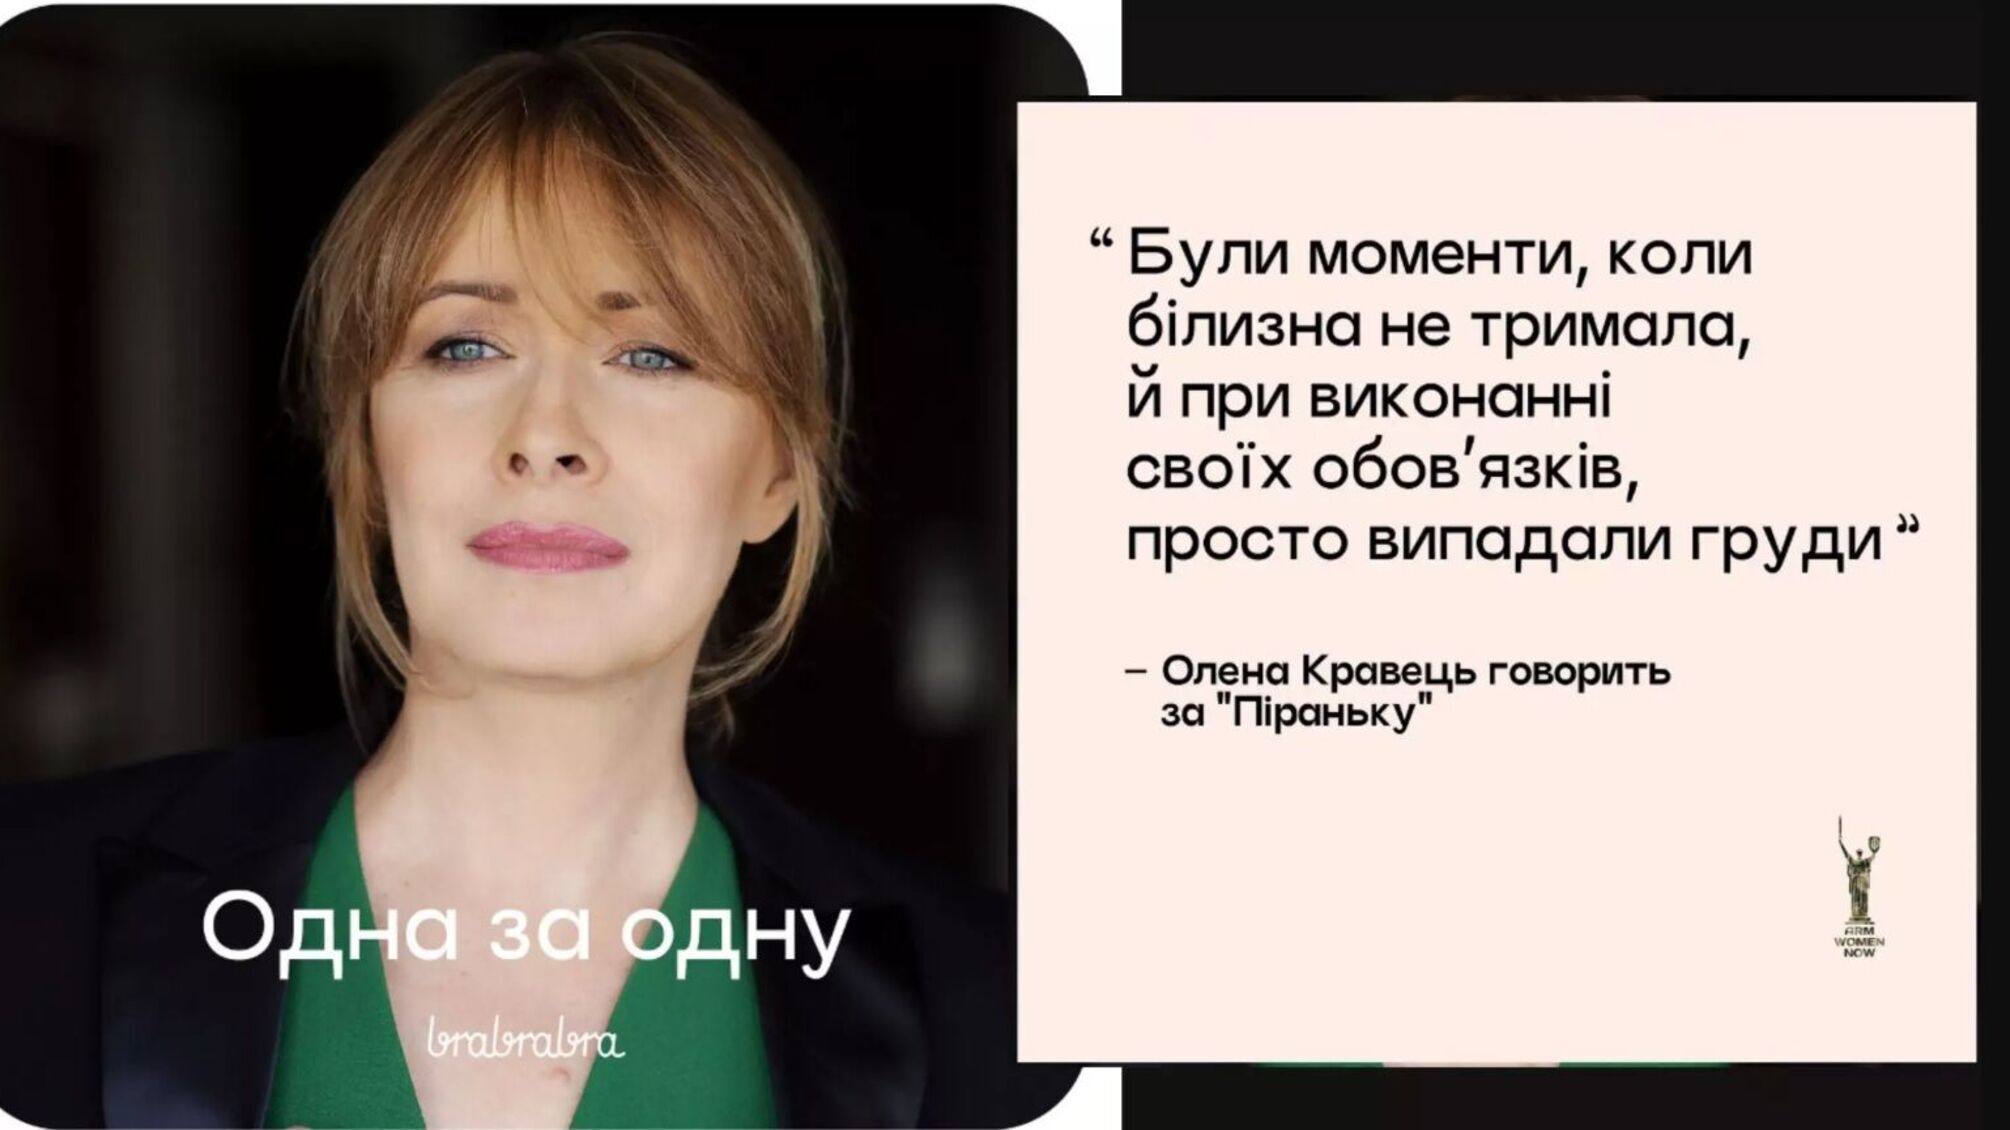 Скандал вокруг рекламы белья: Елена Кравец оказалась в центре